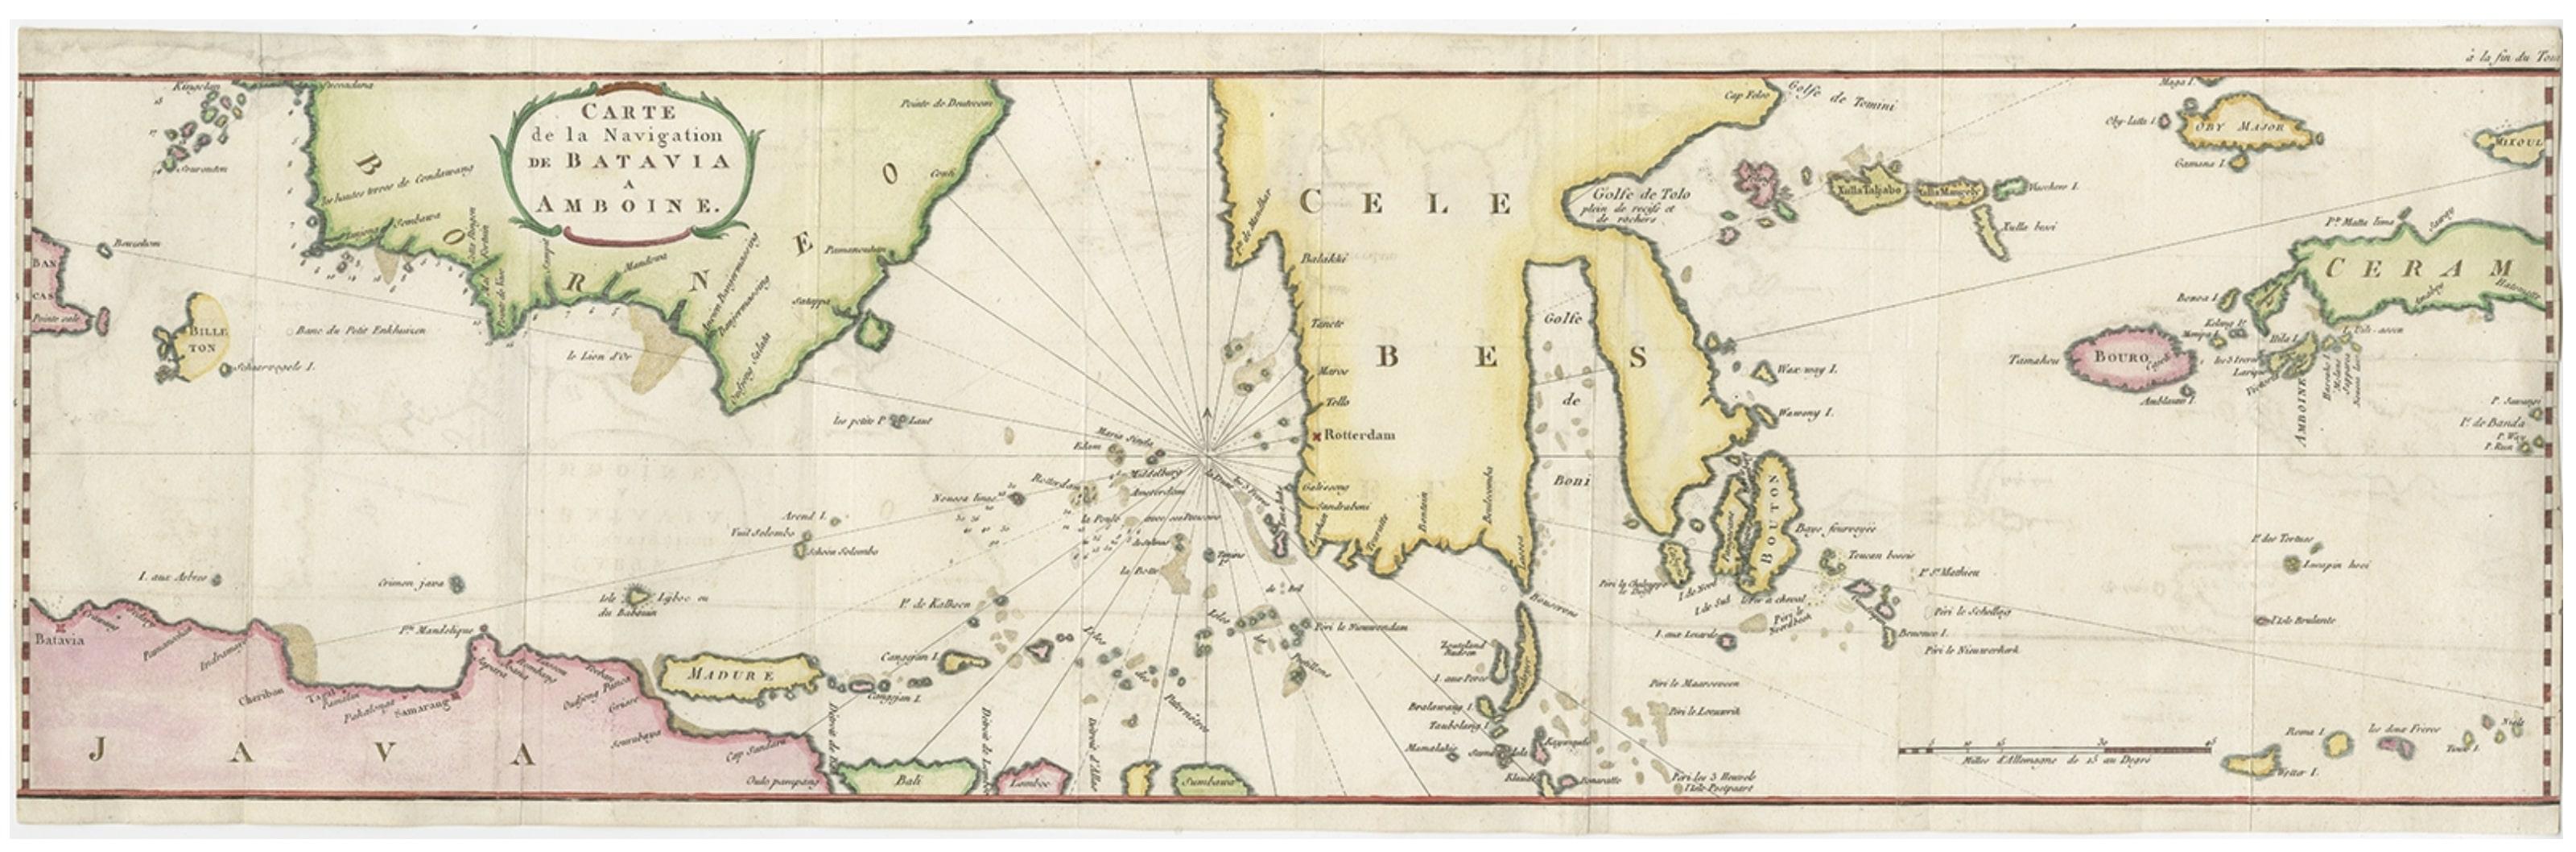 Antique map titled 'Carte de la Navigation de Batavia a Amboina'. 

Rare chart of Indonesia including Borneo, Java, Celebes, Ceram and more. This map originates from 'Voyage par le Cap de Bonne-Esperance et Batavia a Samarang, a Macassar, a